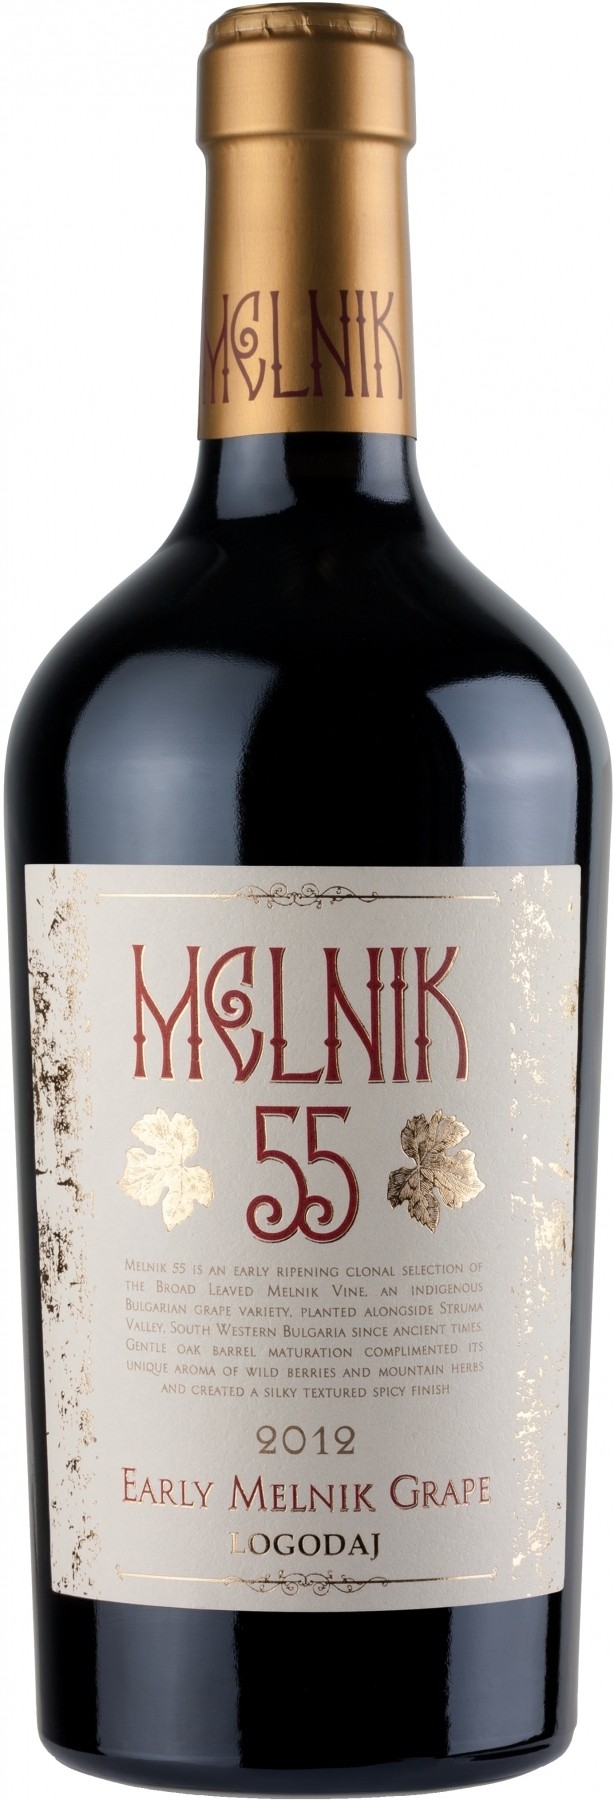 Melnik 55 